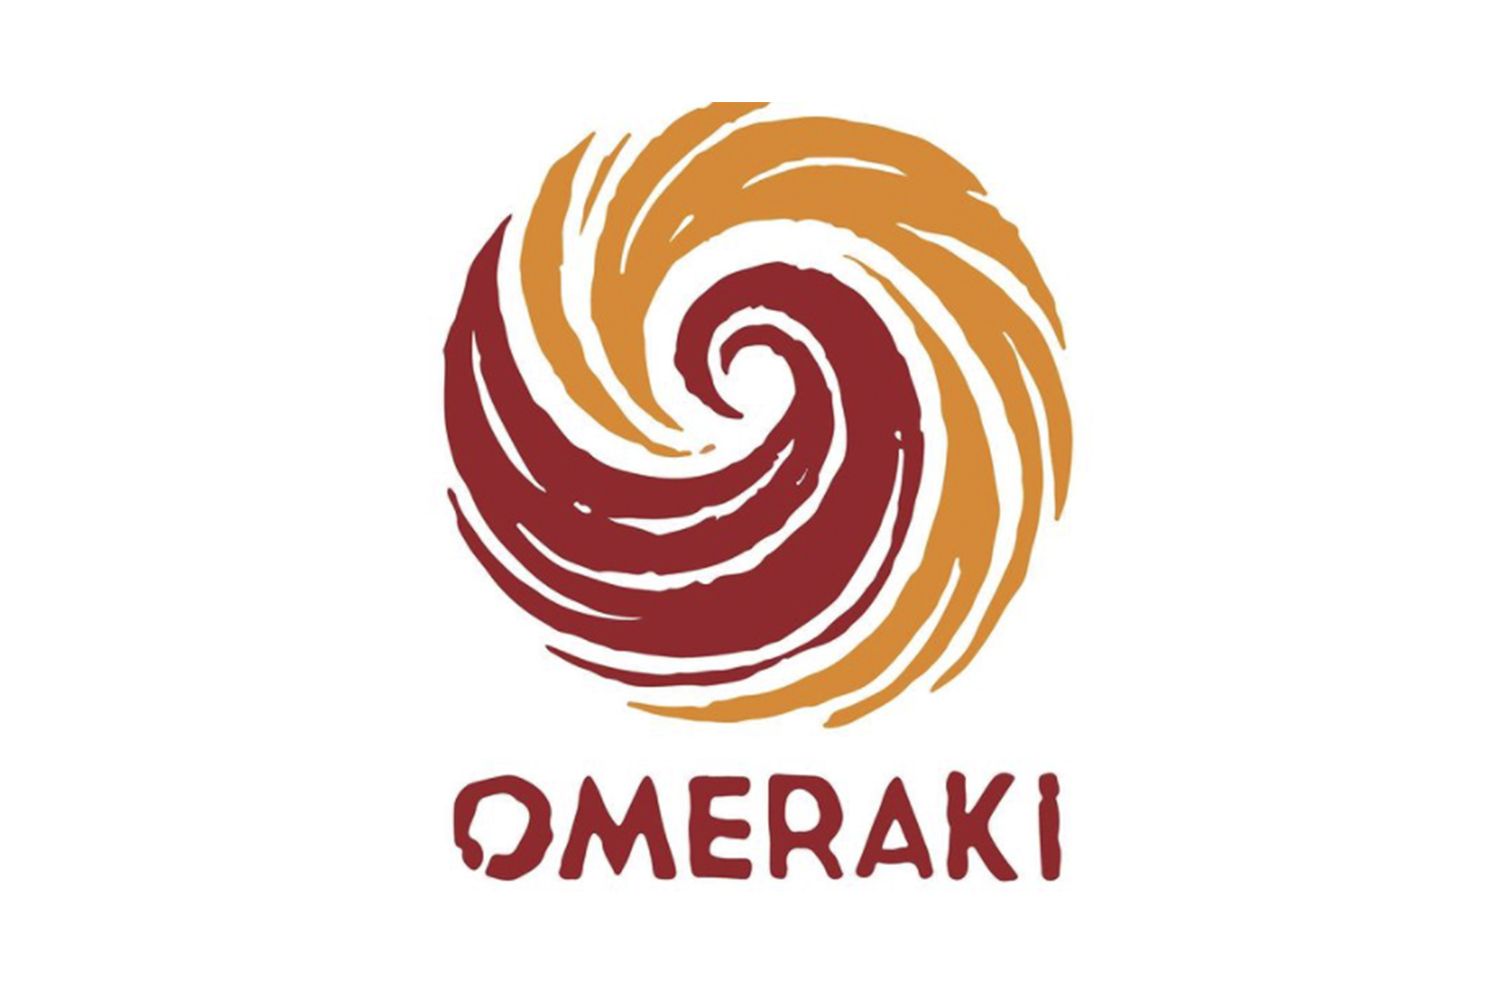 El logo de Omeraki, el restaurante de Alberto Chicote